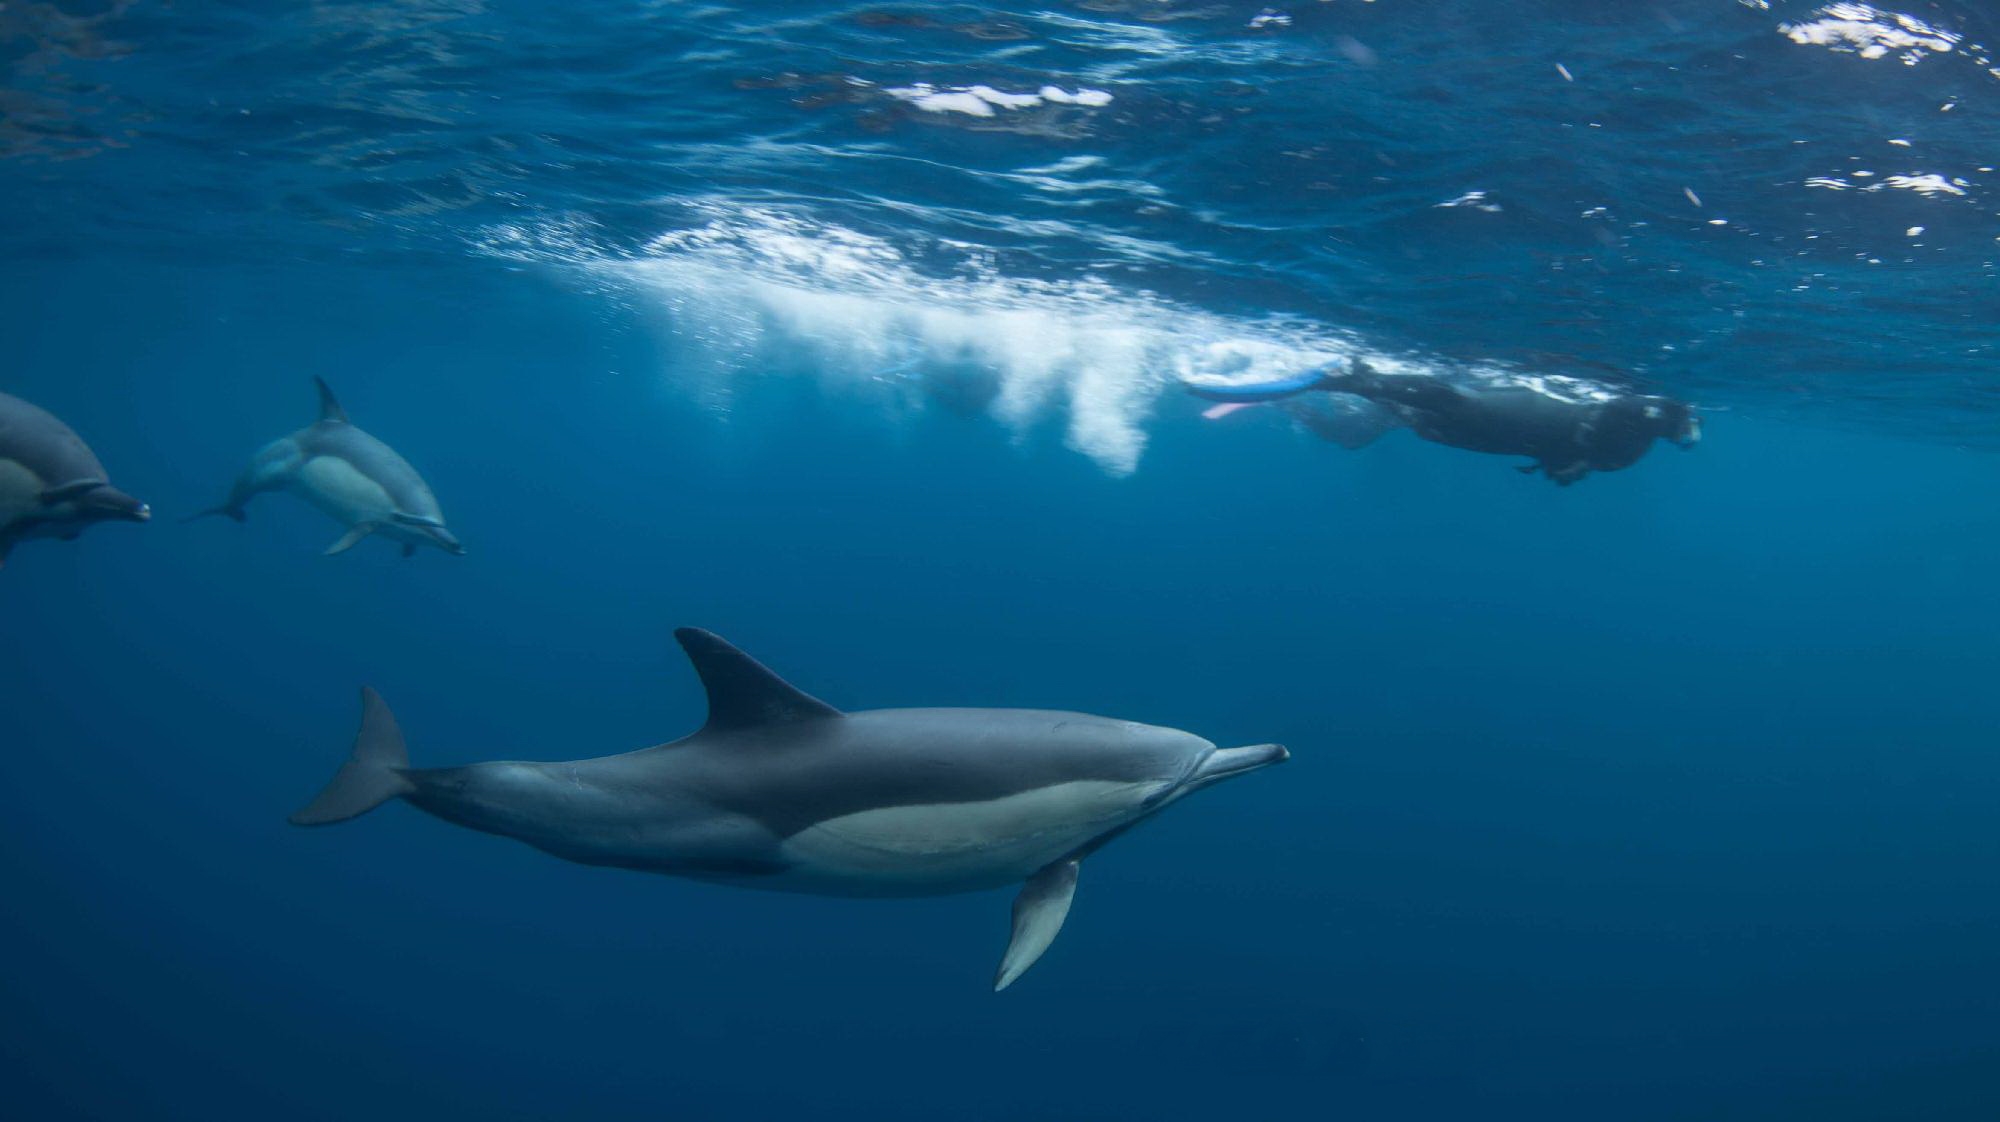 Sardine Run: Snorkelling with Dolphins
(c) Rainer Schimpf